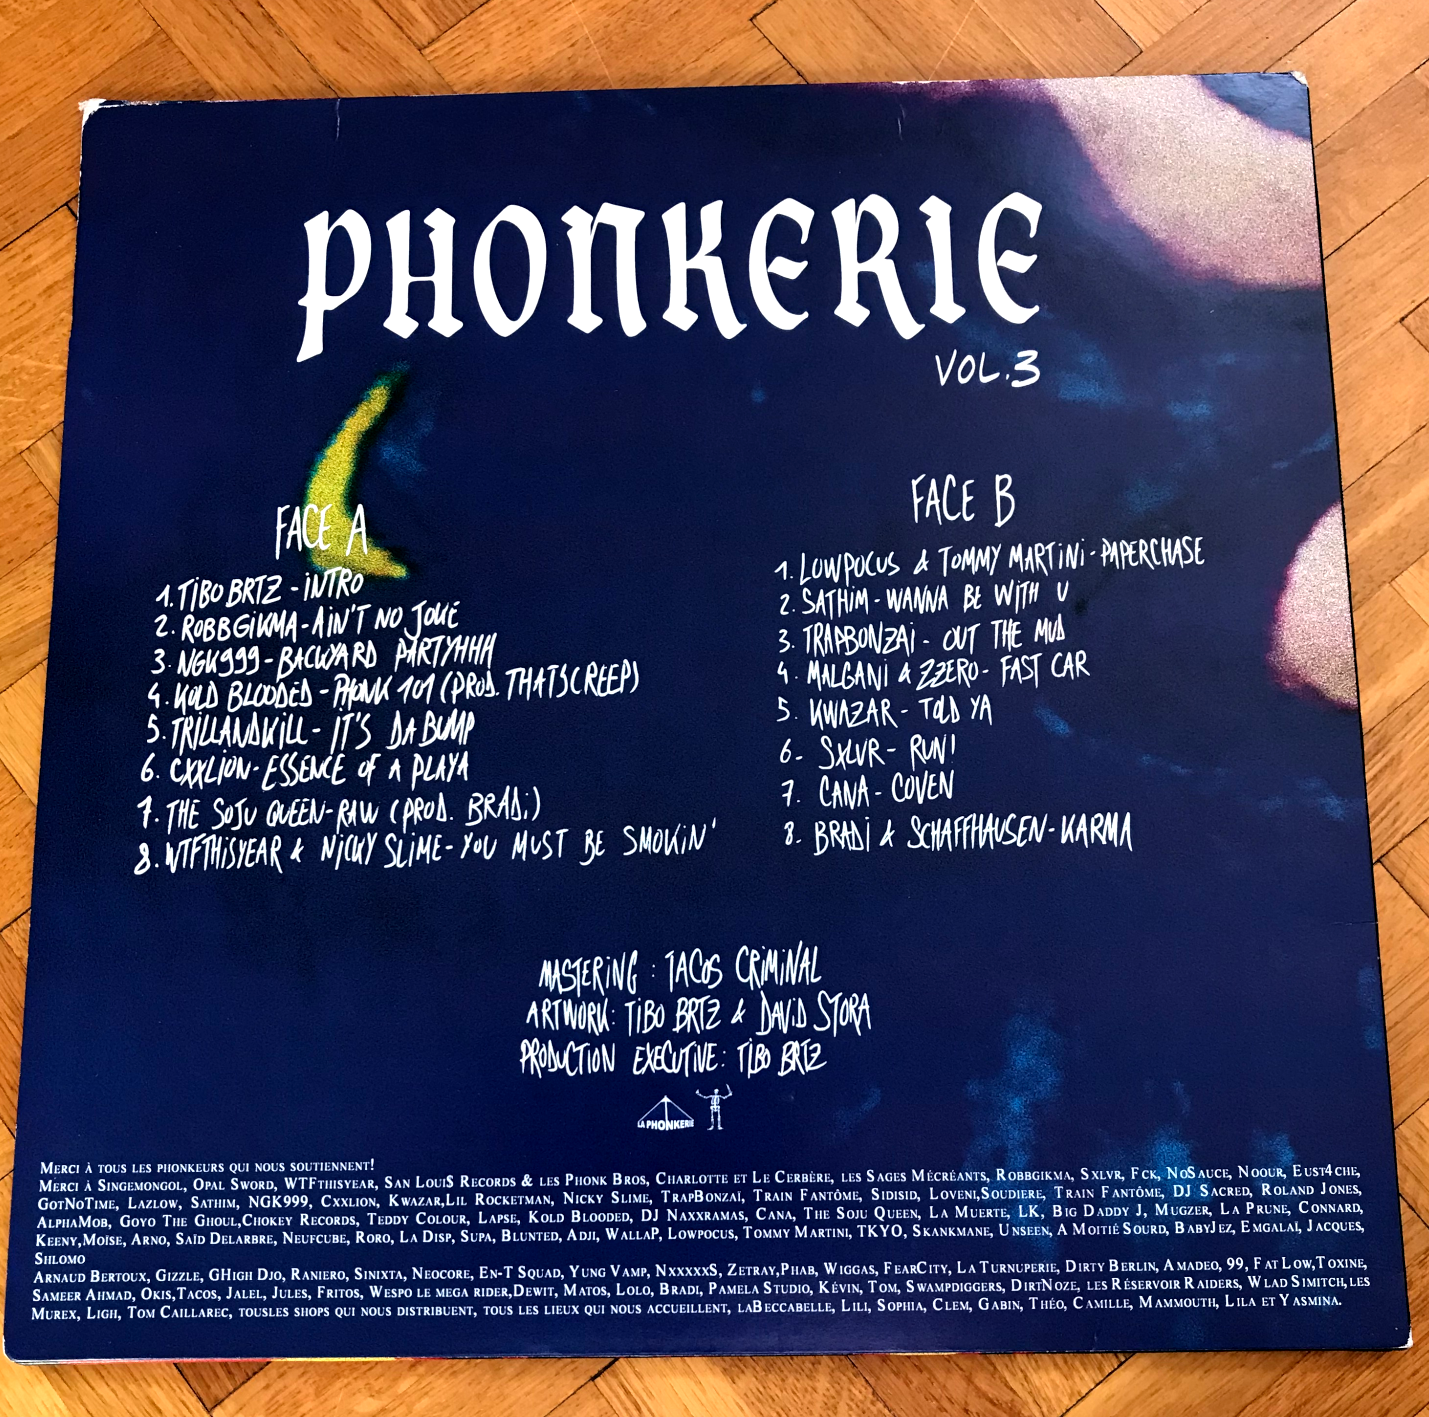 Album vinyle La Phonkerie - Vol 3 de sur Scredboutique.com